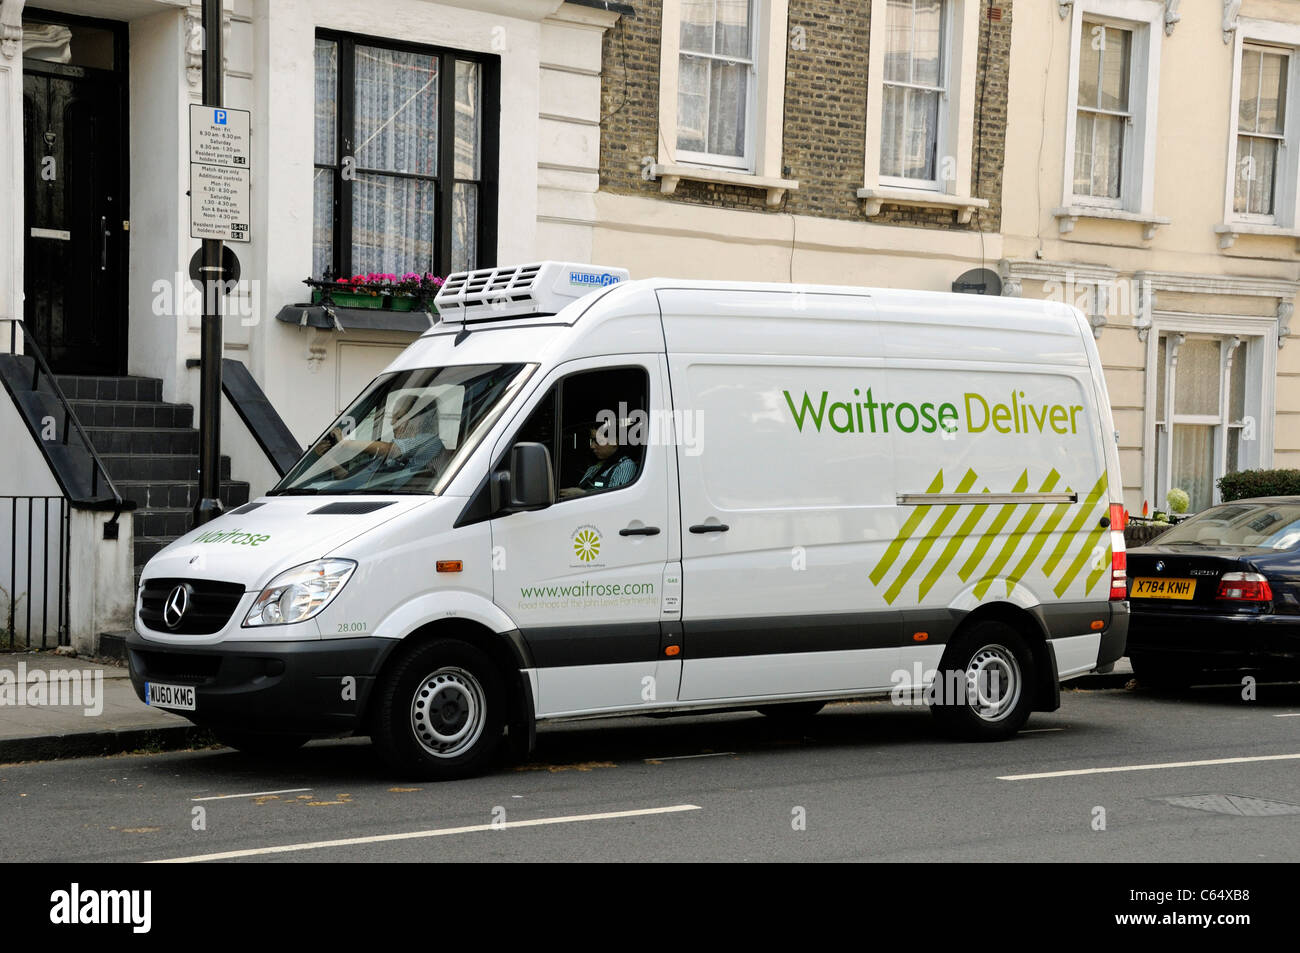 Waitrose consegna furgone fuori casa a Holloway London Borough of Islington N7 Inghilterra Gran Bretagna Regno Unito Foto Stock